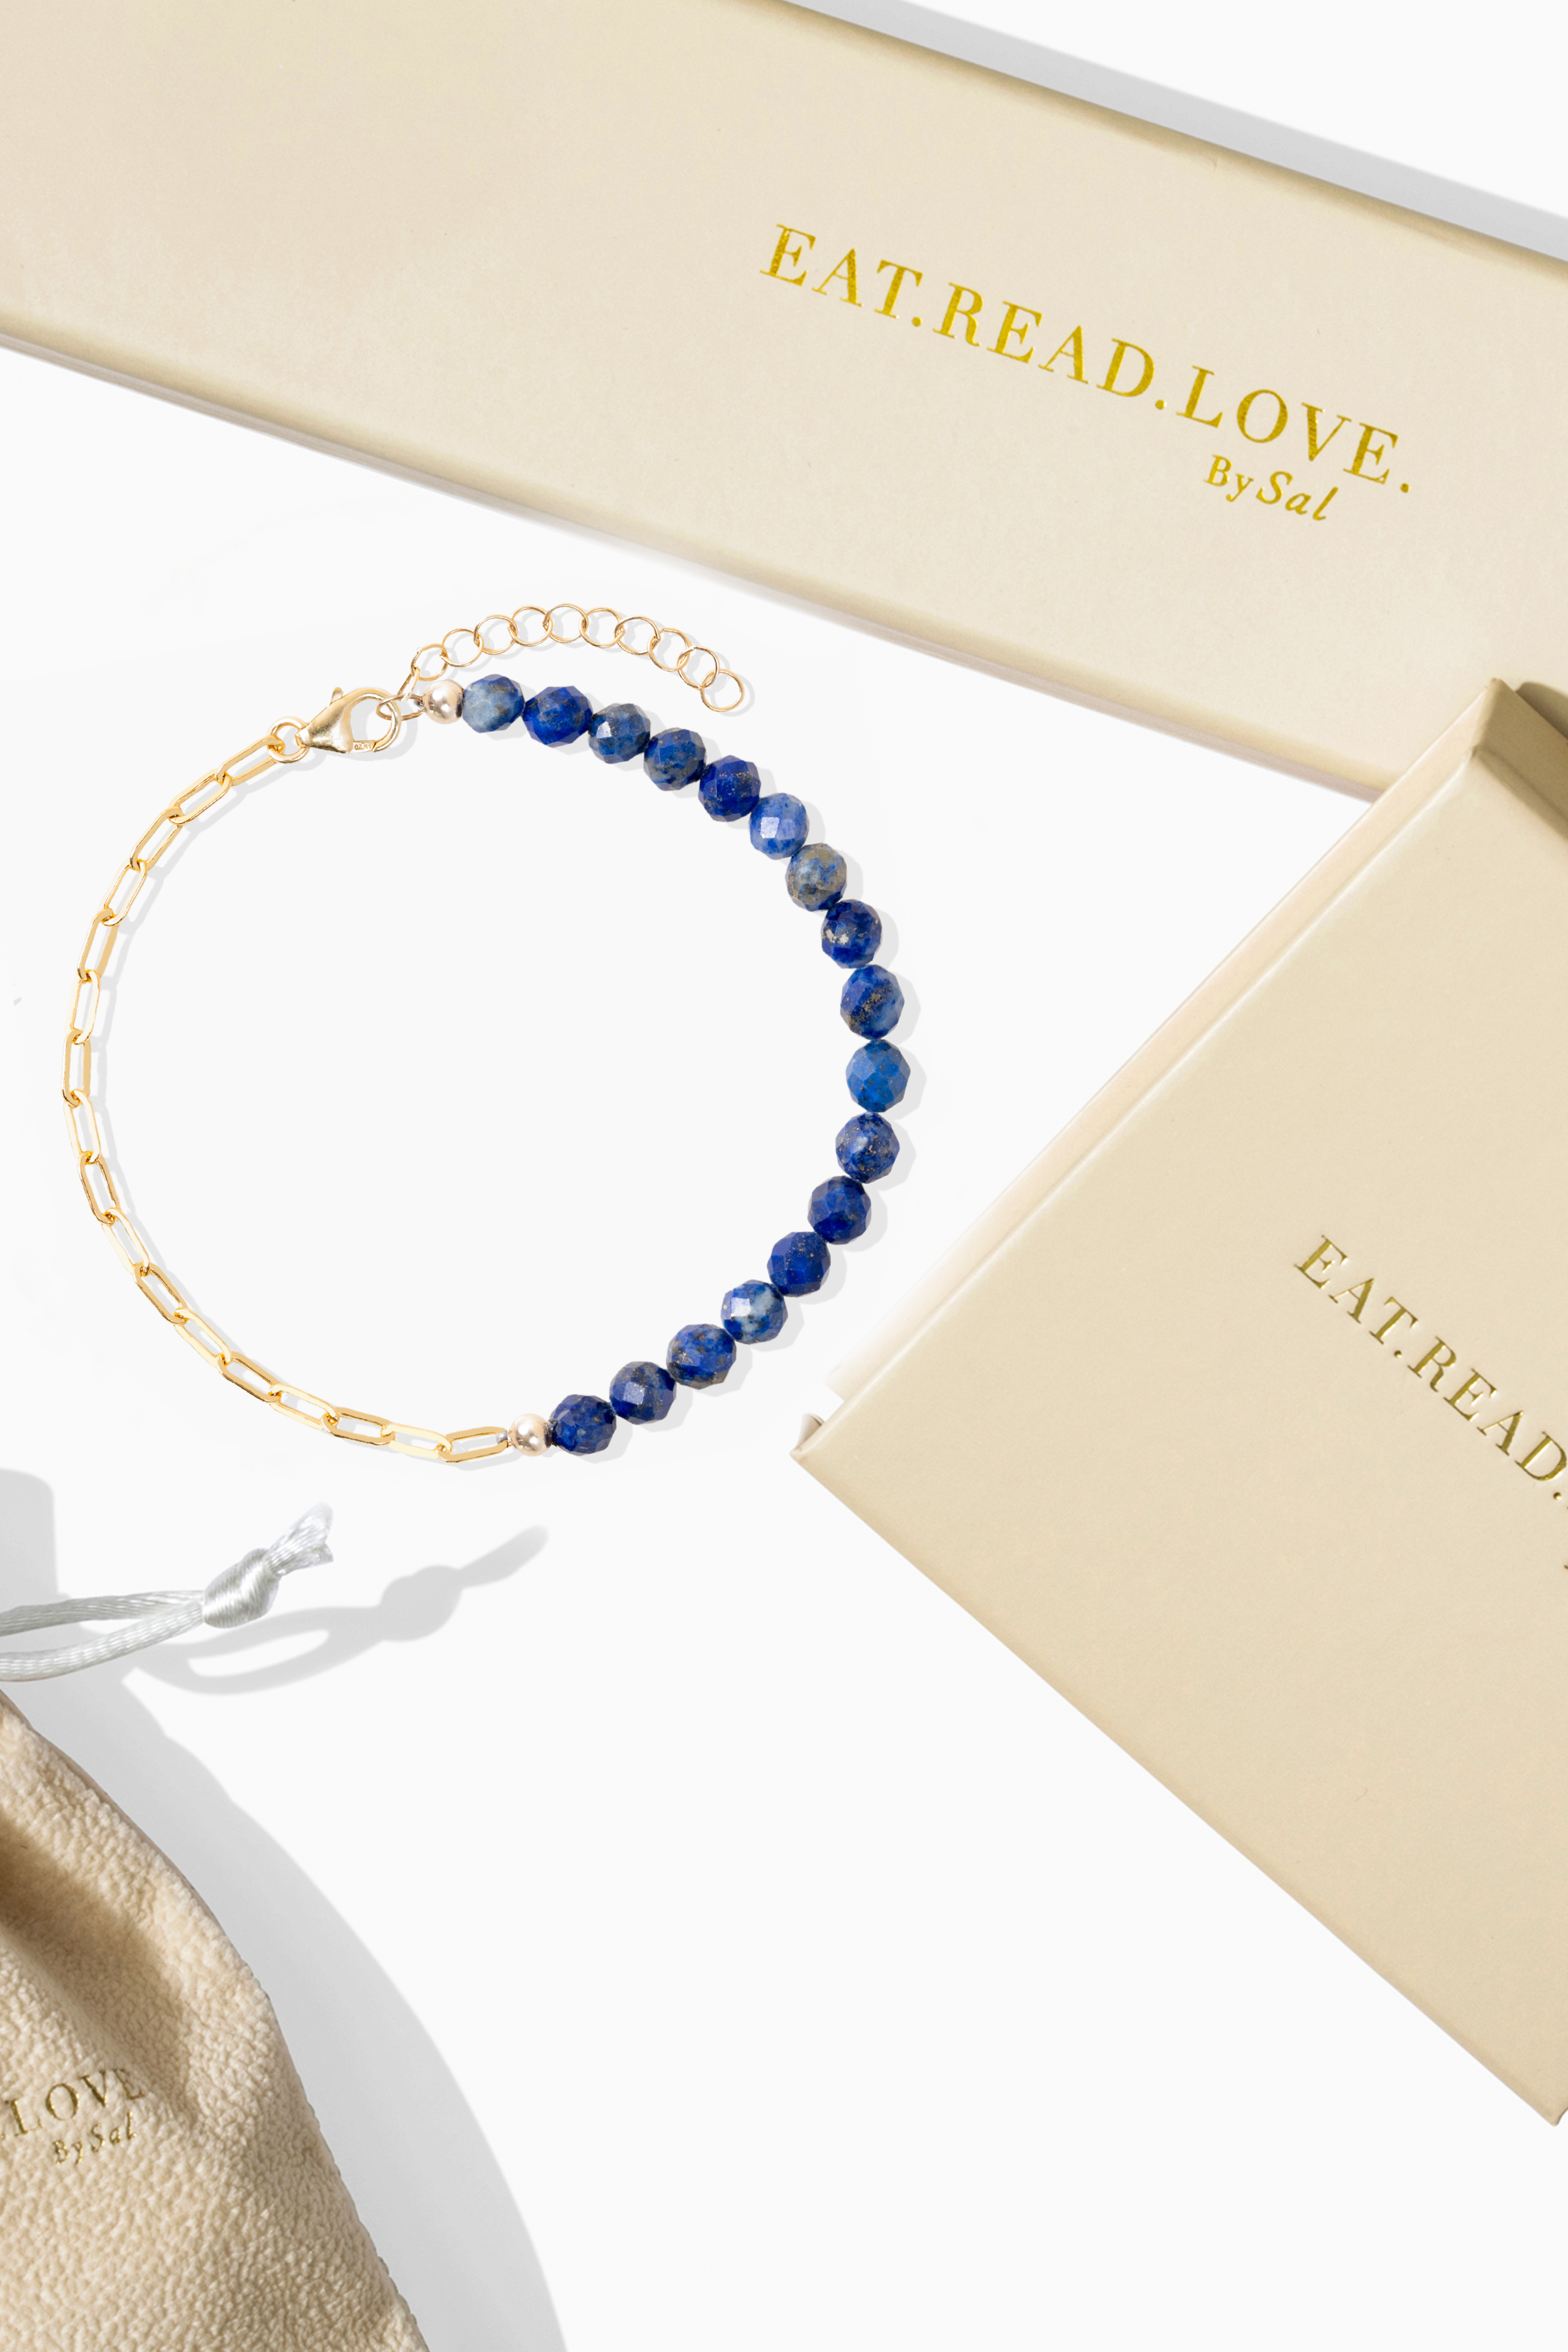 Goddess of Wisdom Gold Vermeil Bracelet With Lapis Lazuli